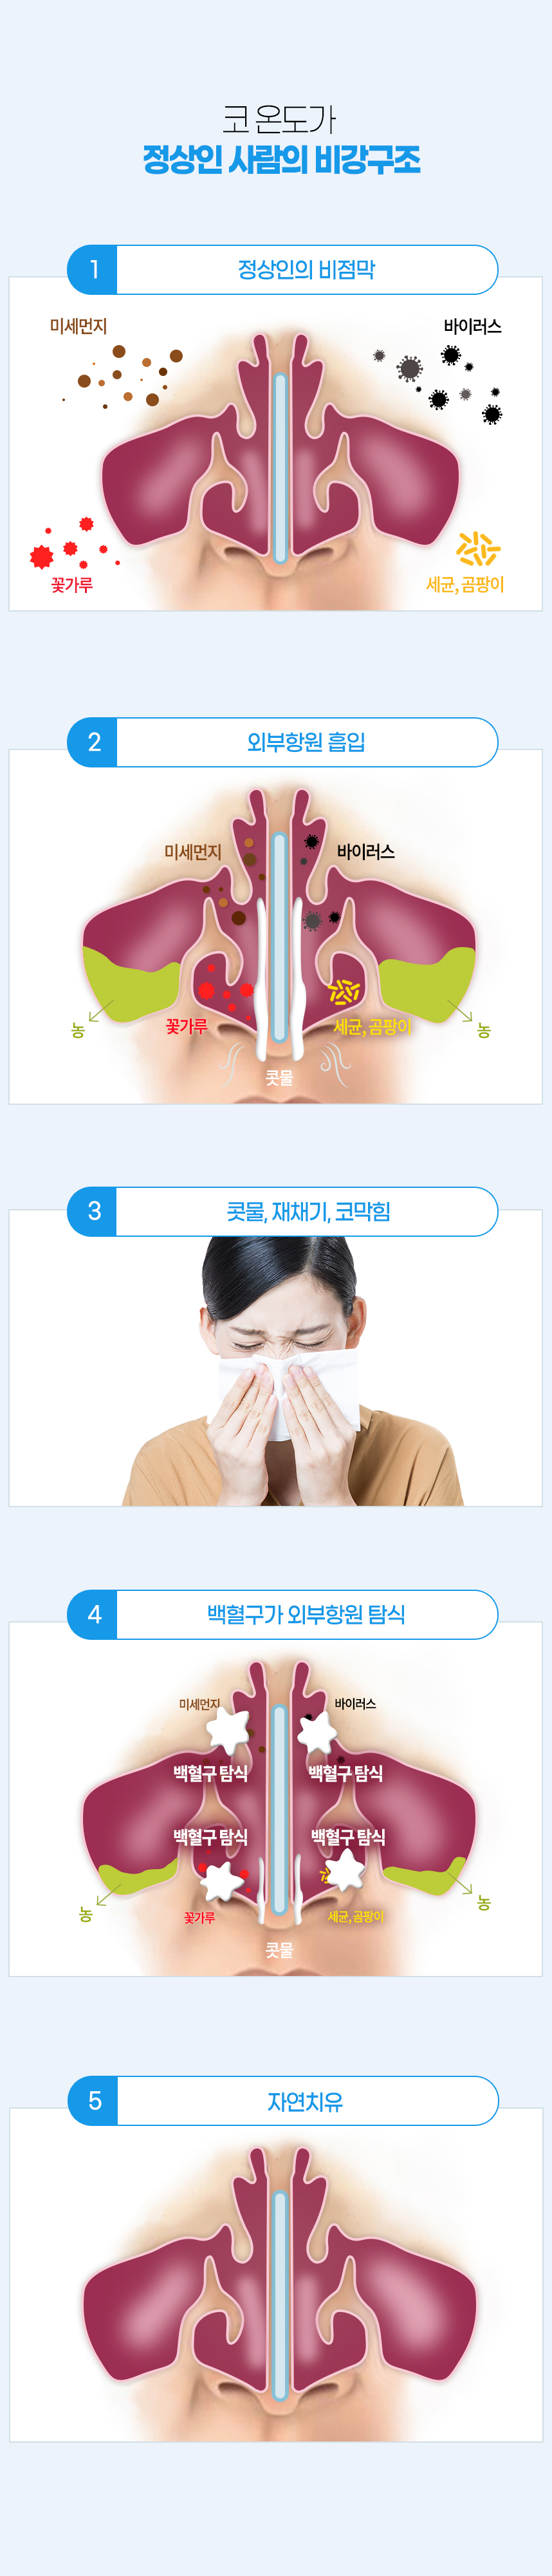 코 온도가 정상인 사람의 비강구조